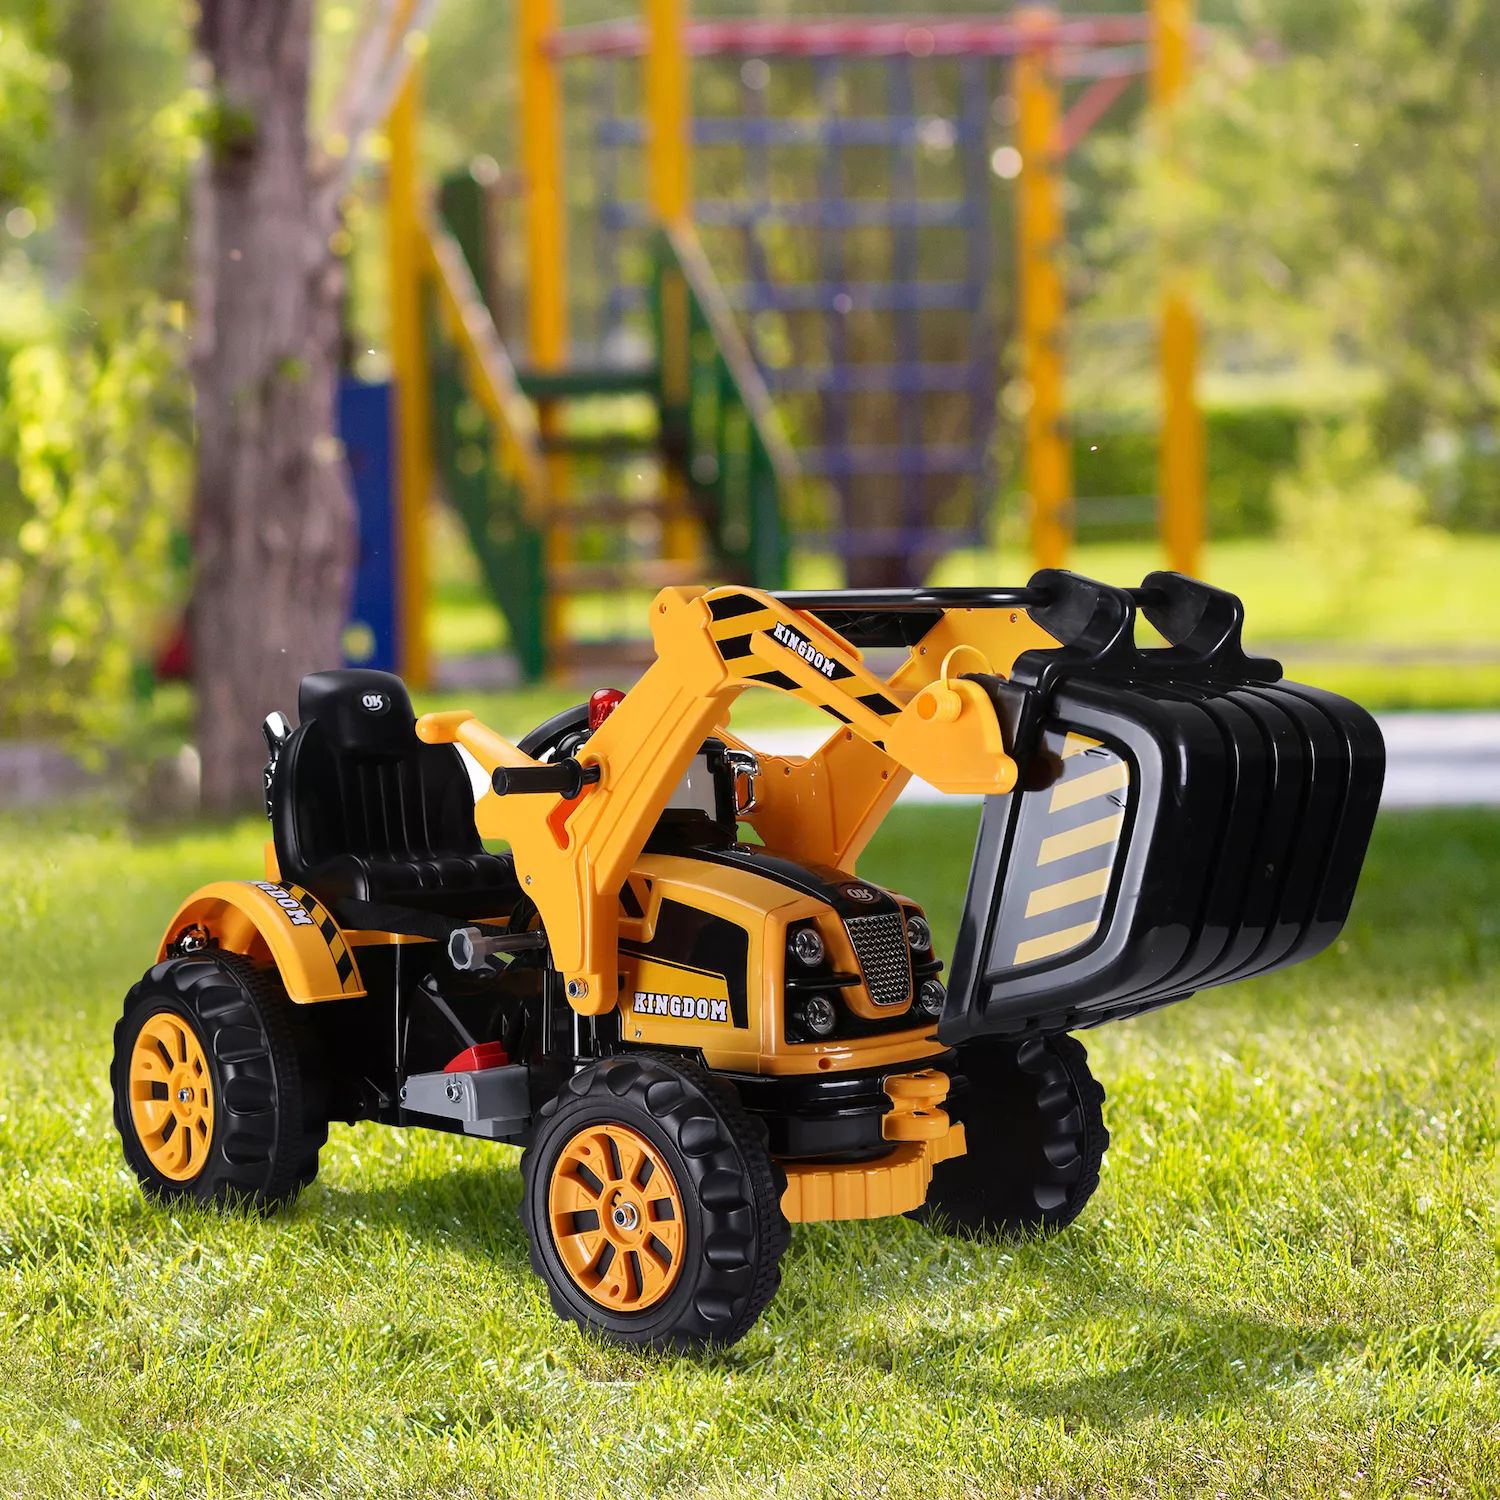 Электрический детский экскаватор Aosom 6 В, строительный экскаватор, трактор, автомобиль-экскаватор, игрушка, двигающаяся вперед назад Aosom